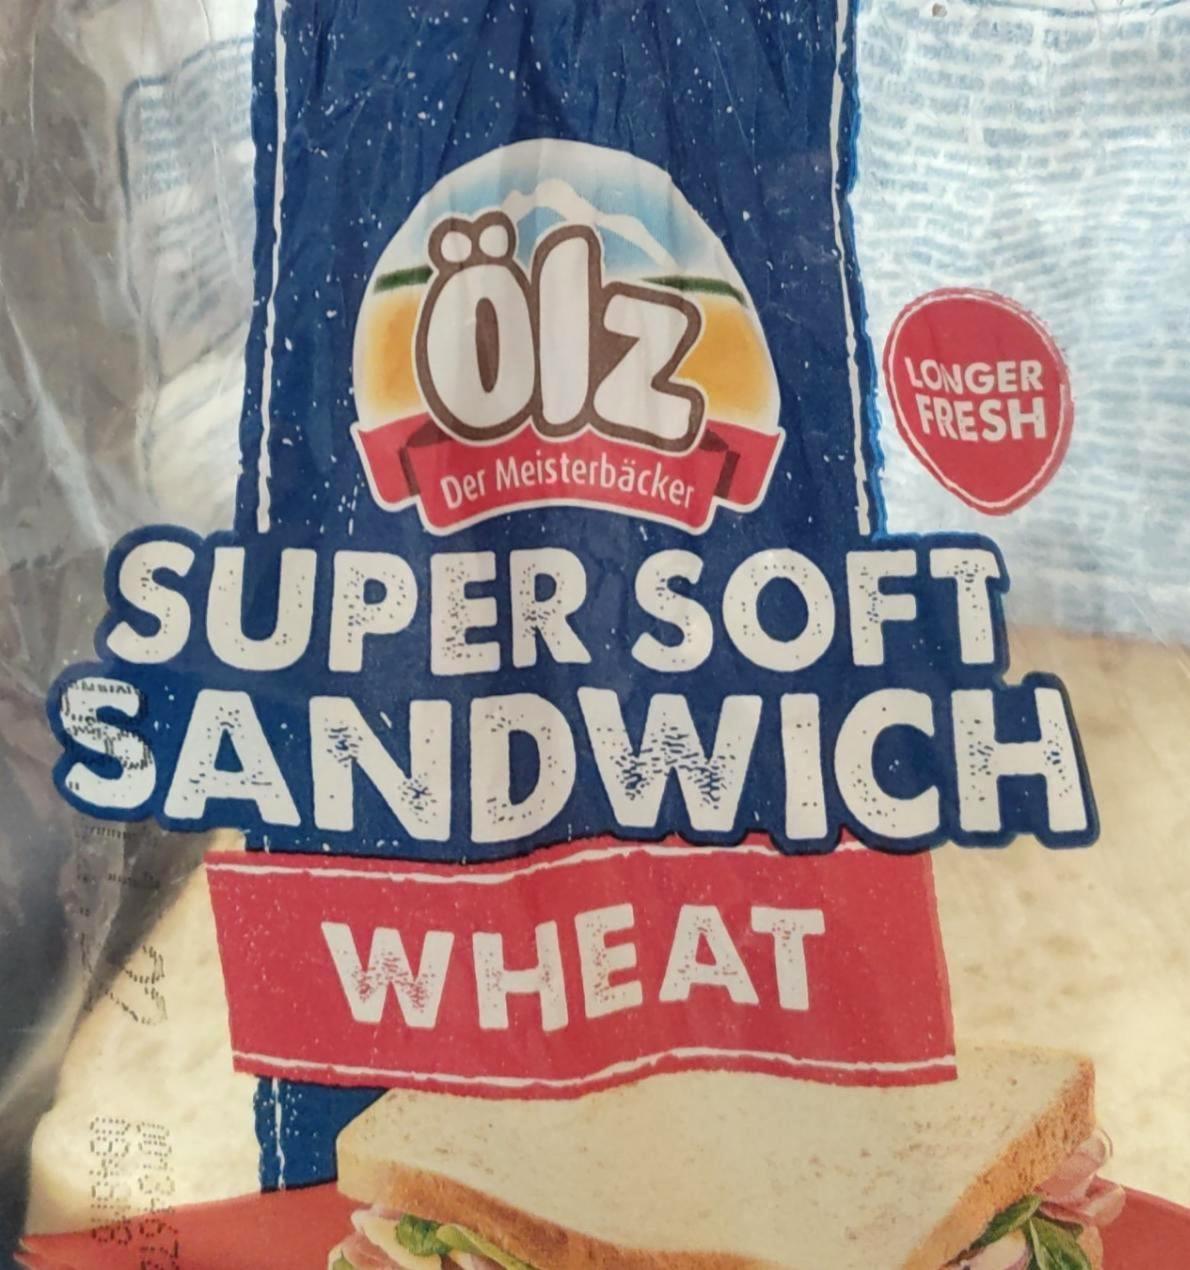 Képek - Super soft sandwich wheat Ölz